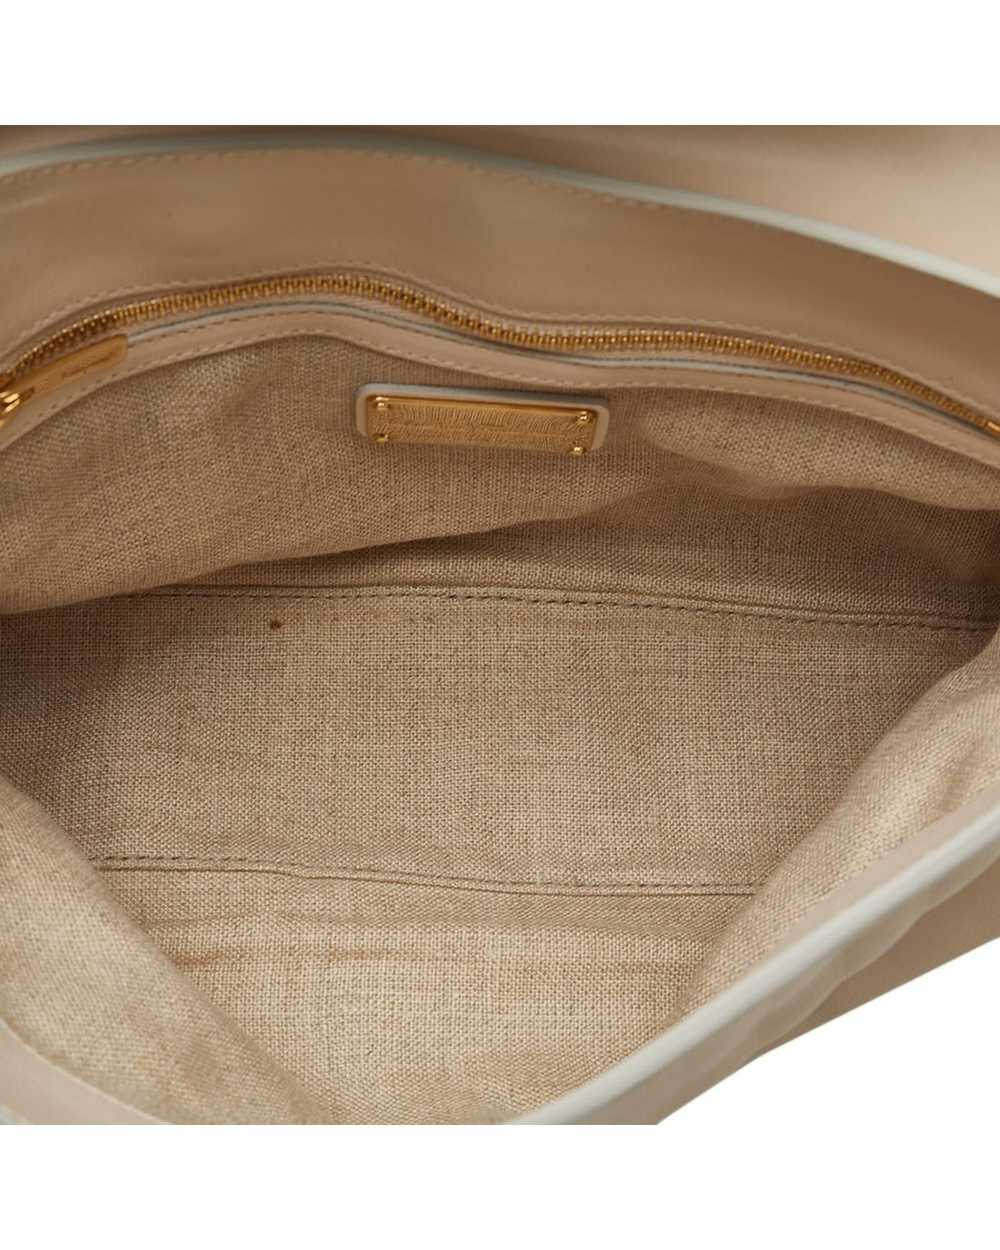 Salvatore Ferragamo Leather Chain Shoulder Bag in… - image 5